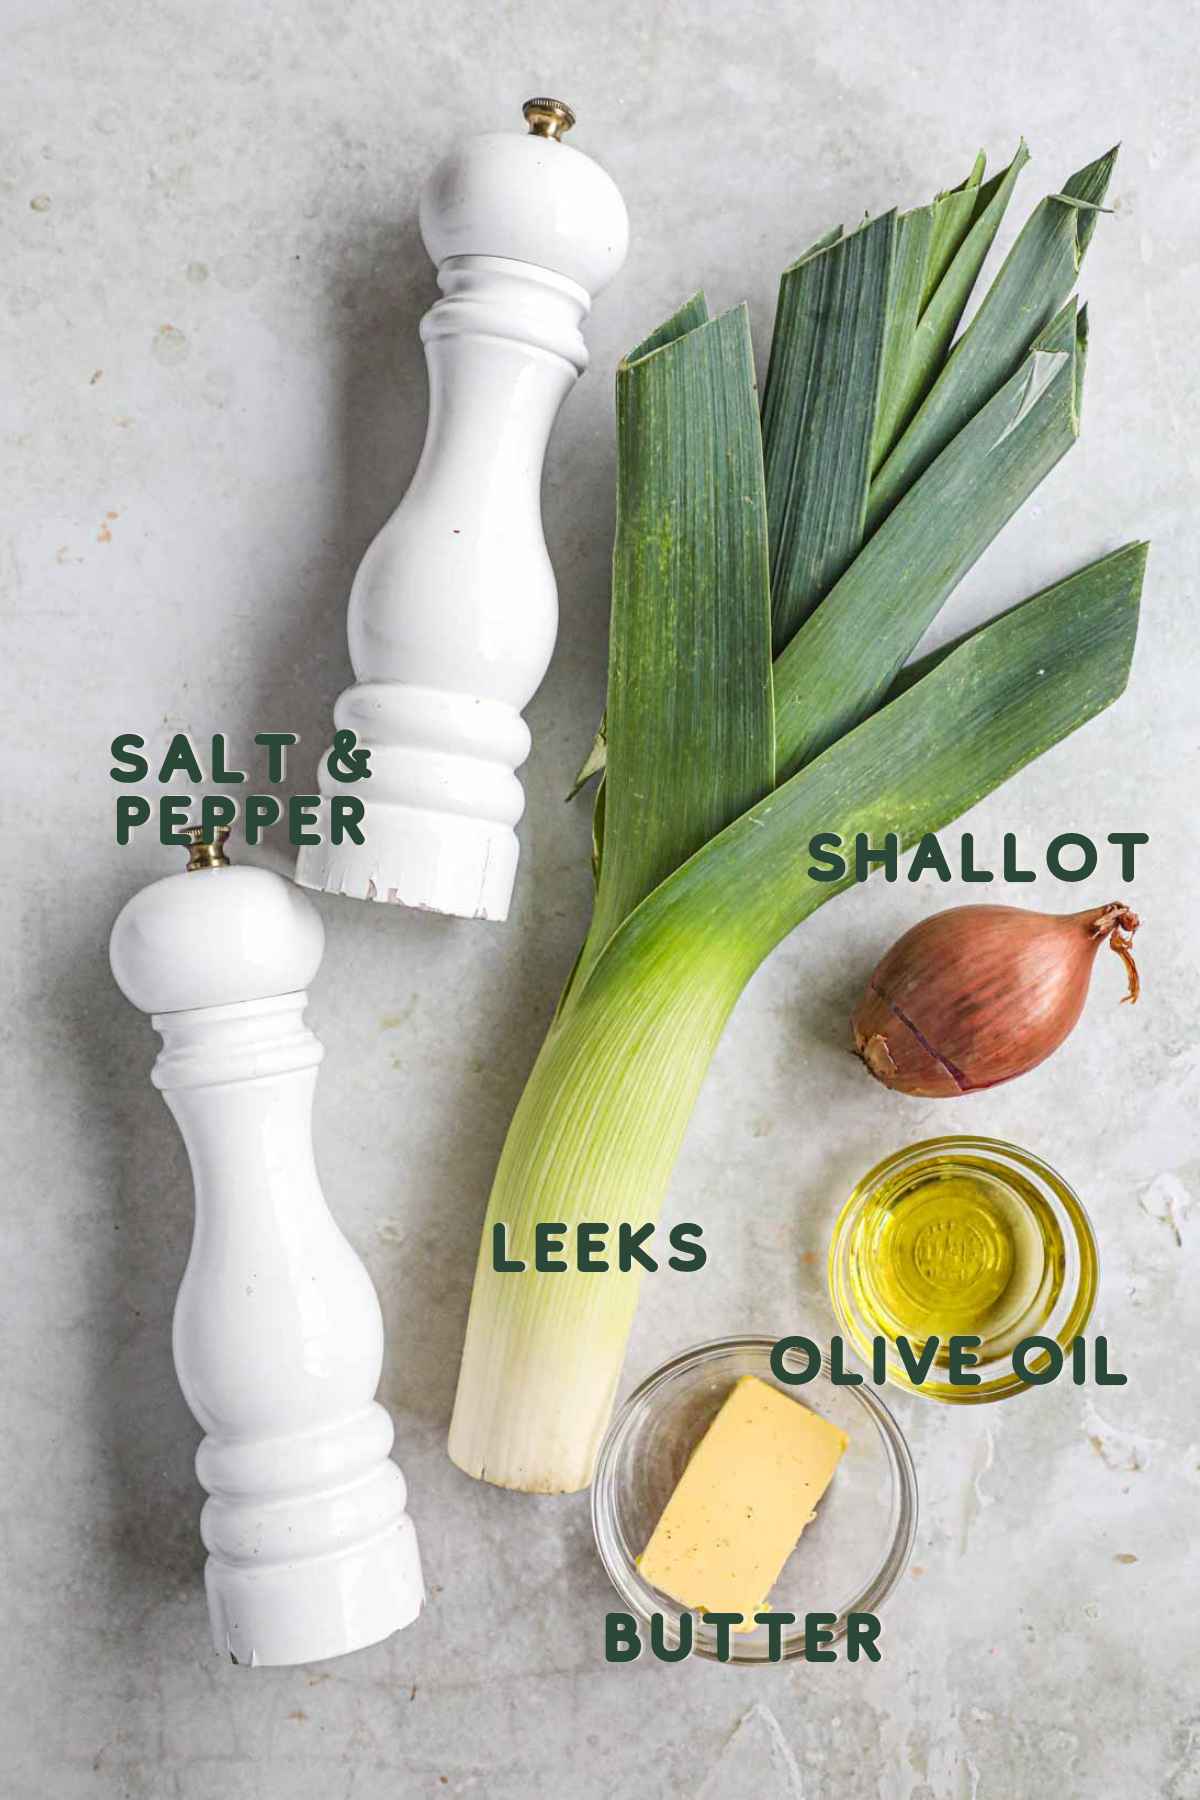 Ingredients to make sautéed buttered leeks and shallots, including leeks, shallot, olive oil, butter, salt, and pepper.